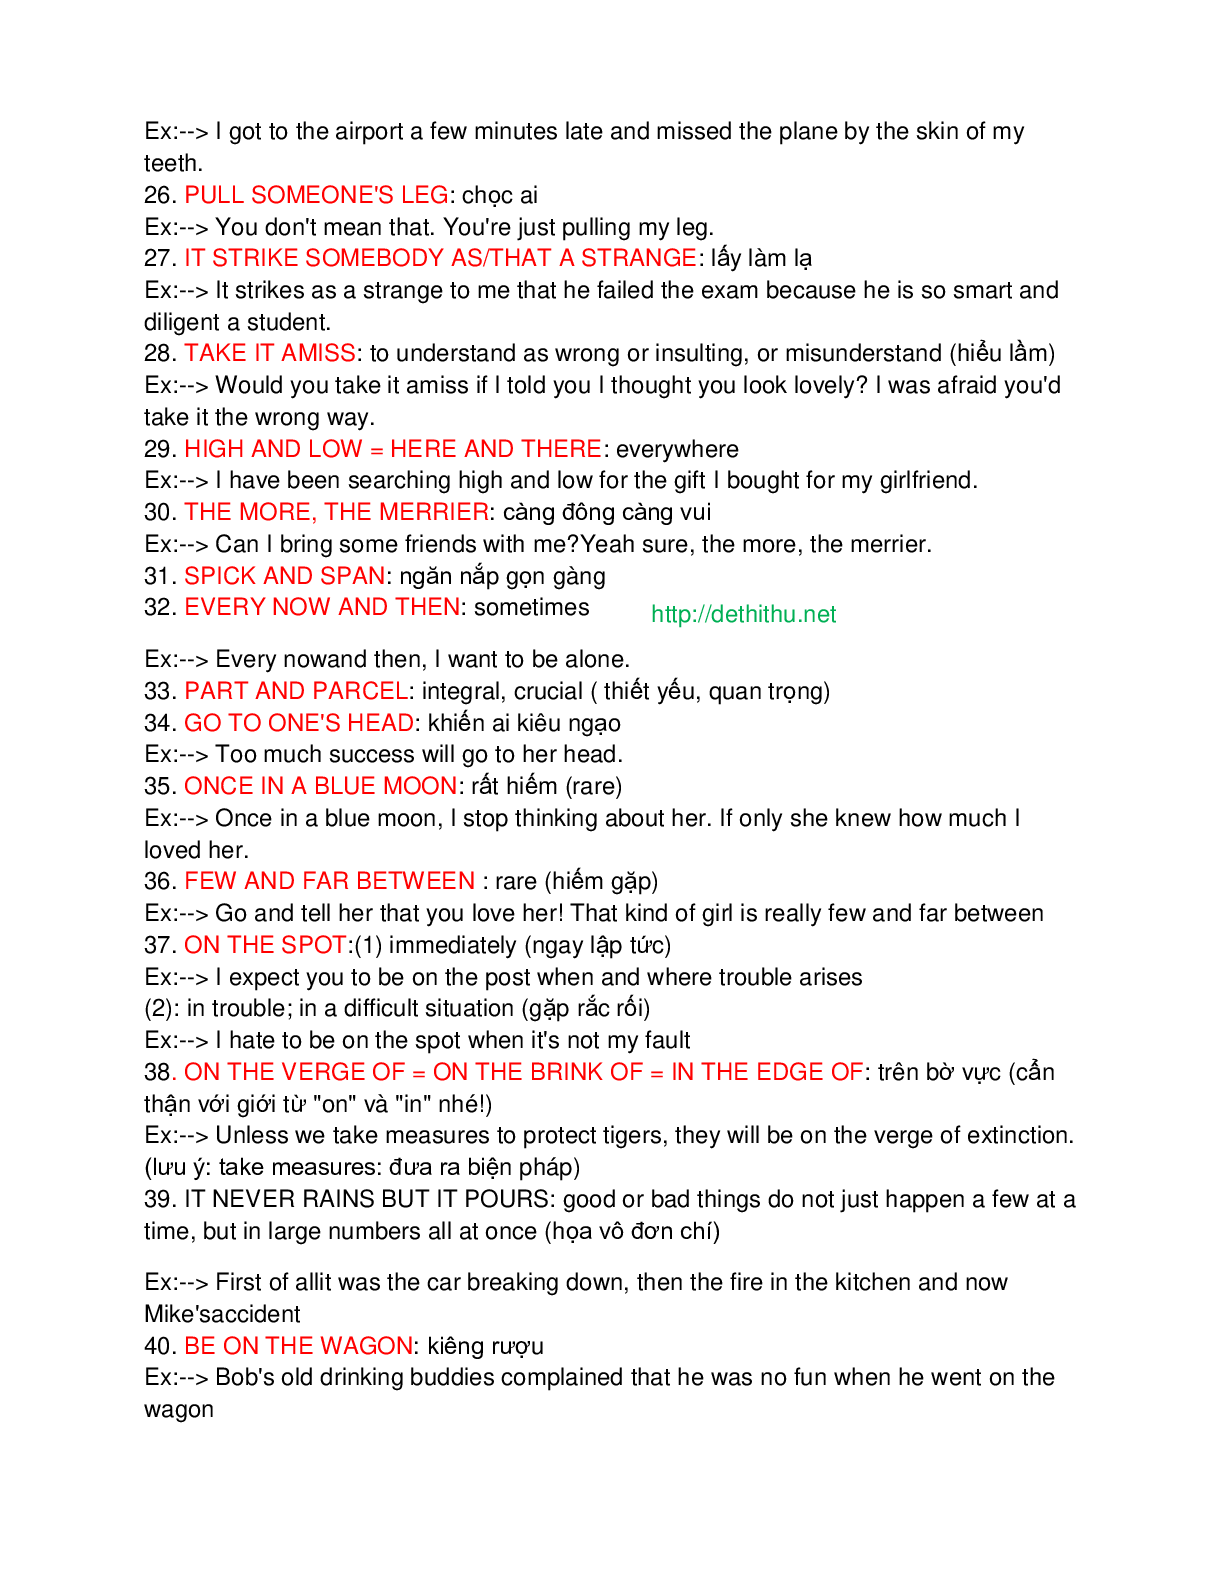 100 idioms quan trọng thường gặp trong đề thi đại học môn Tiếng Anh (trang 3)